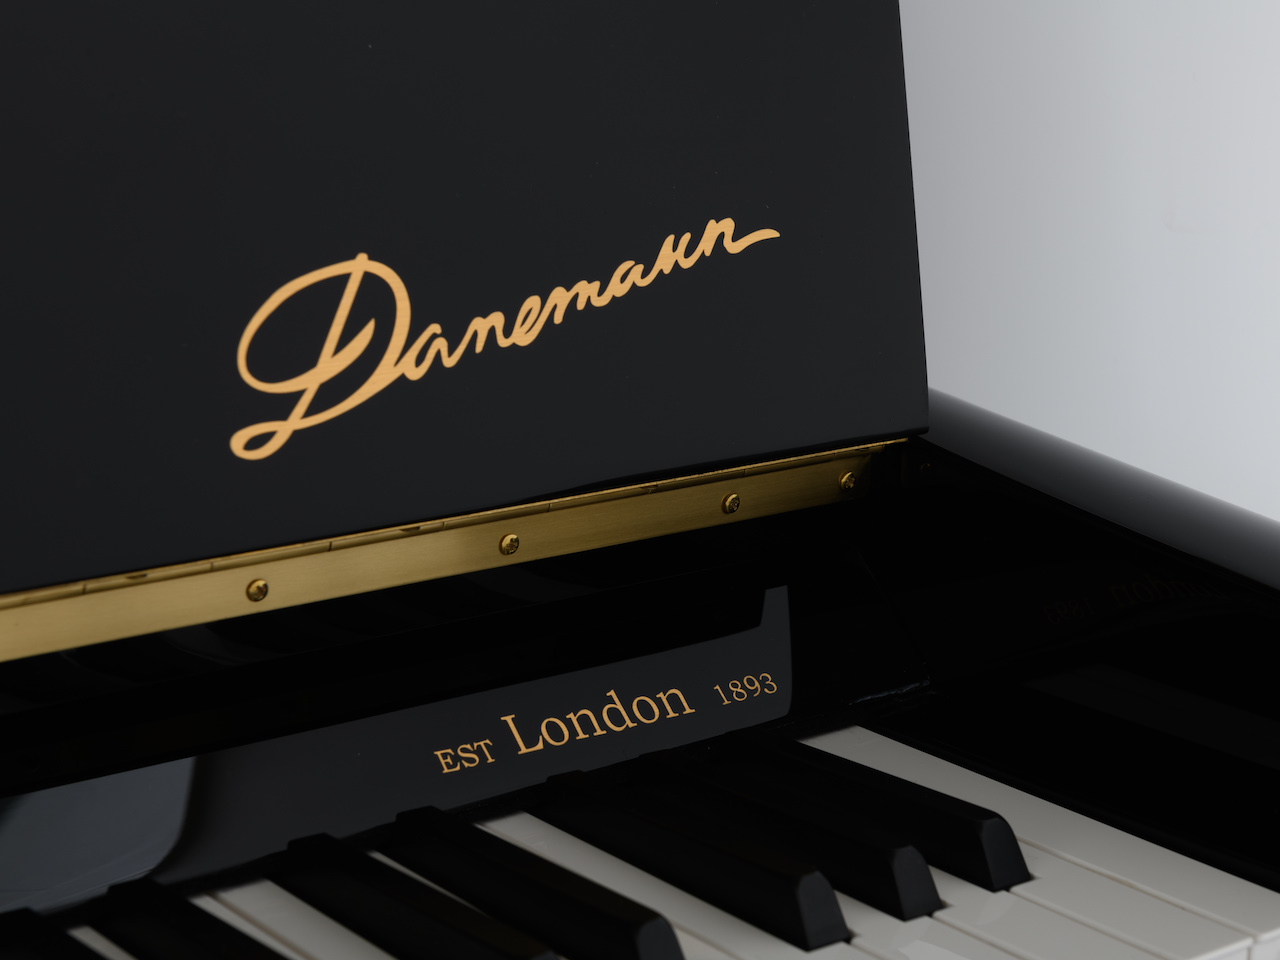 Danemann Pianos: The reinvention of an historic British brand